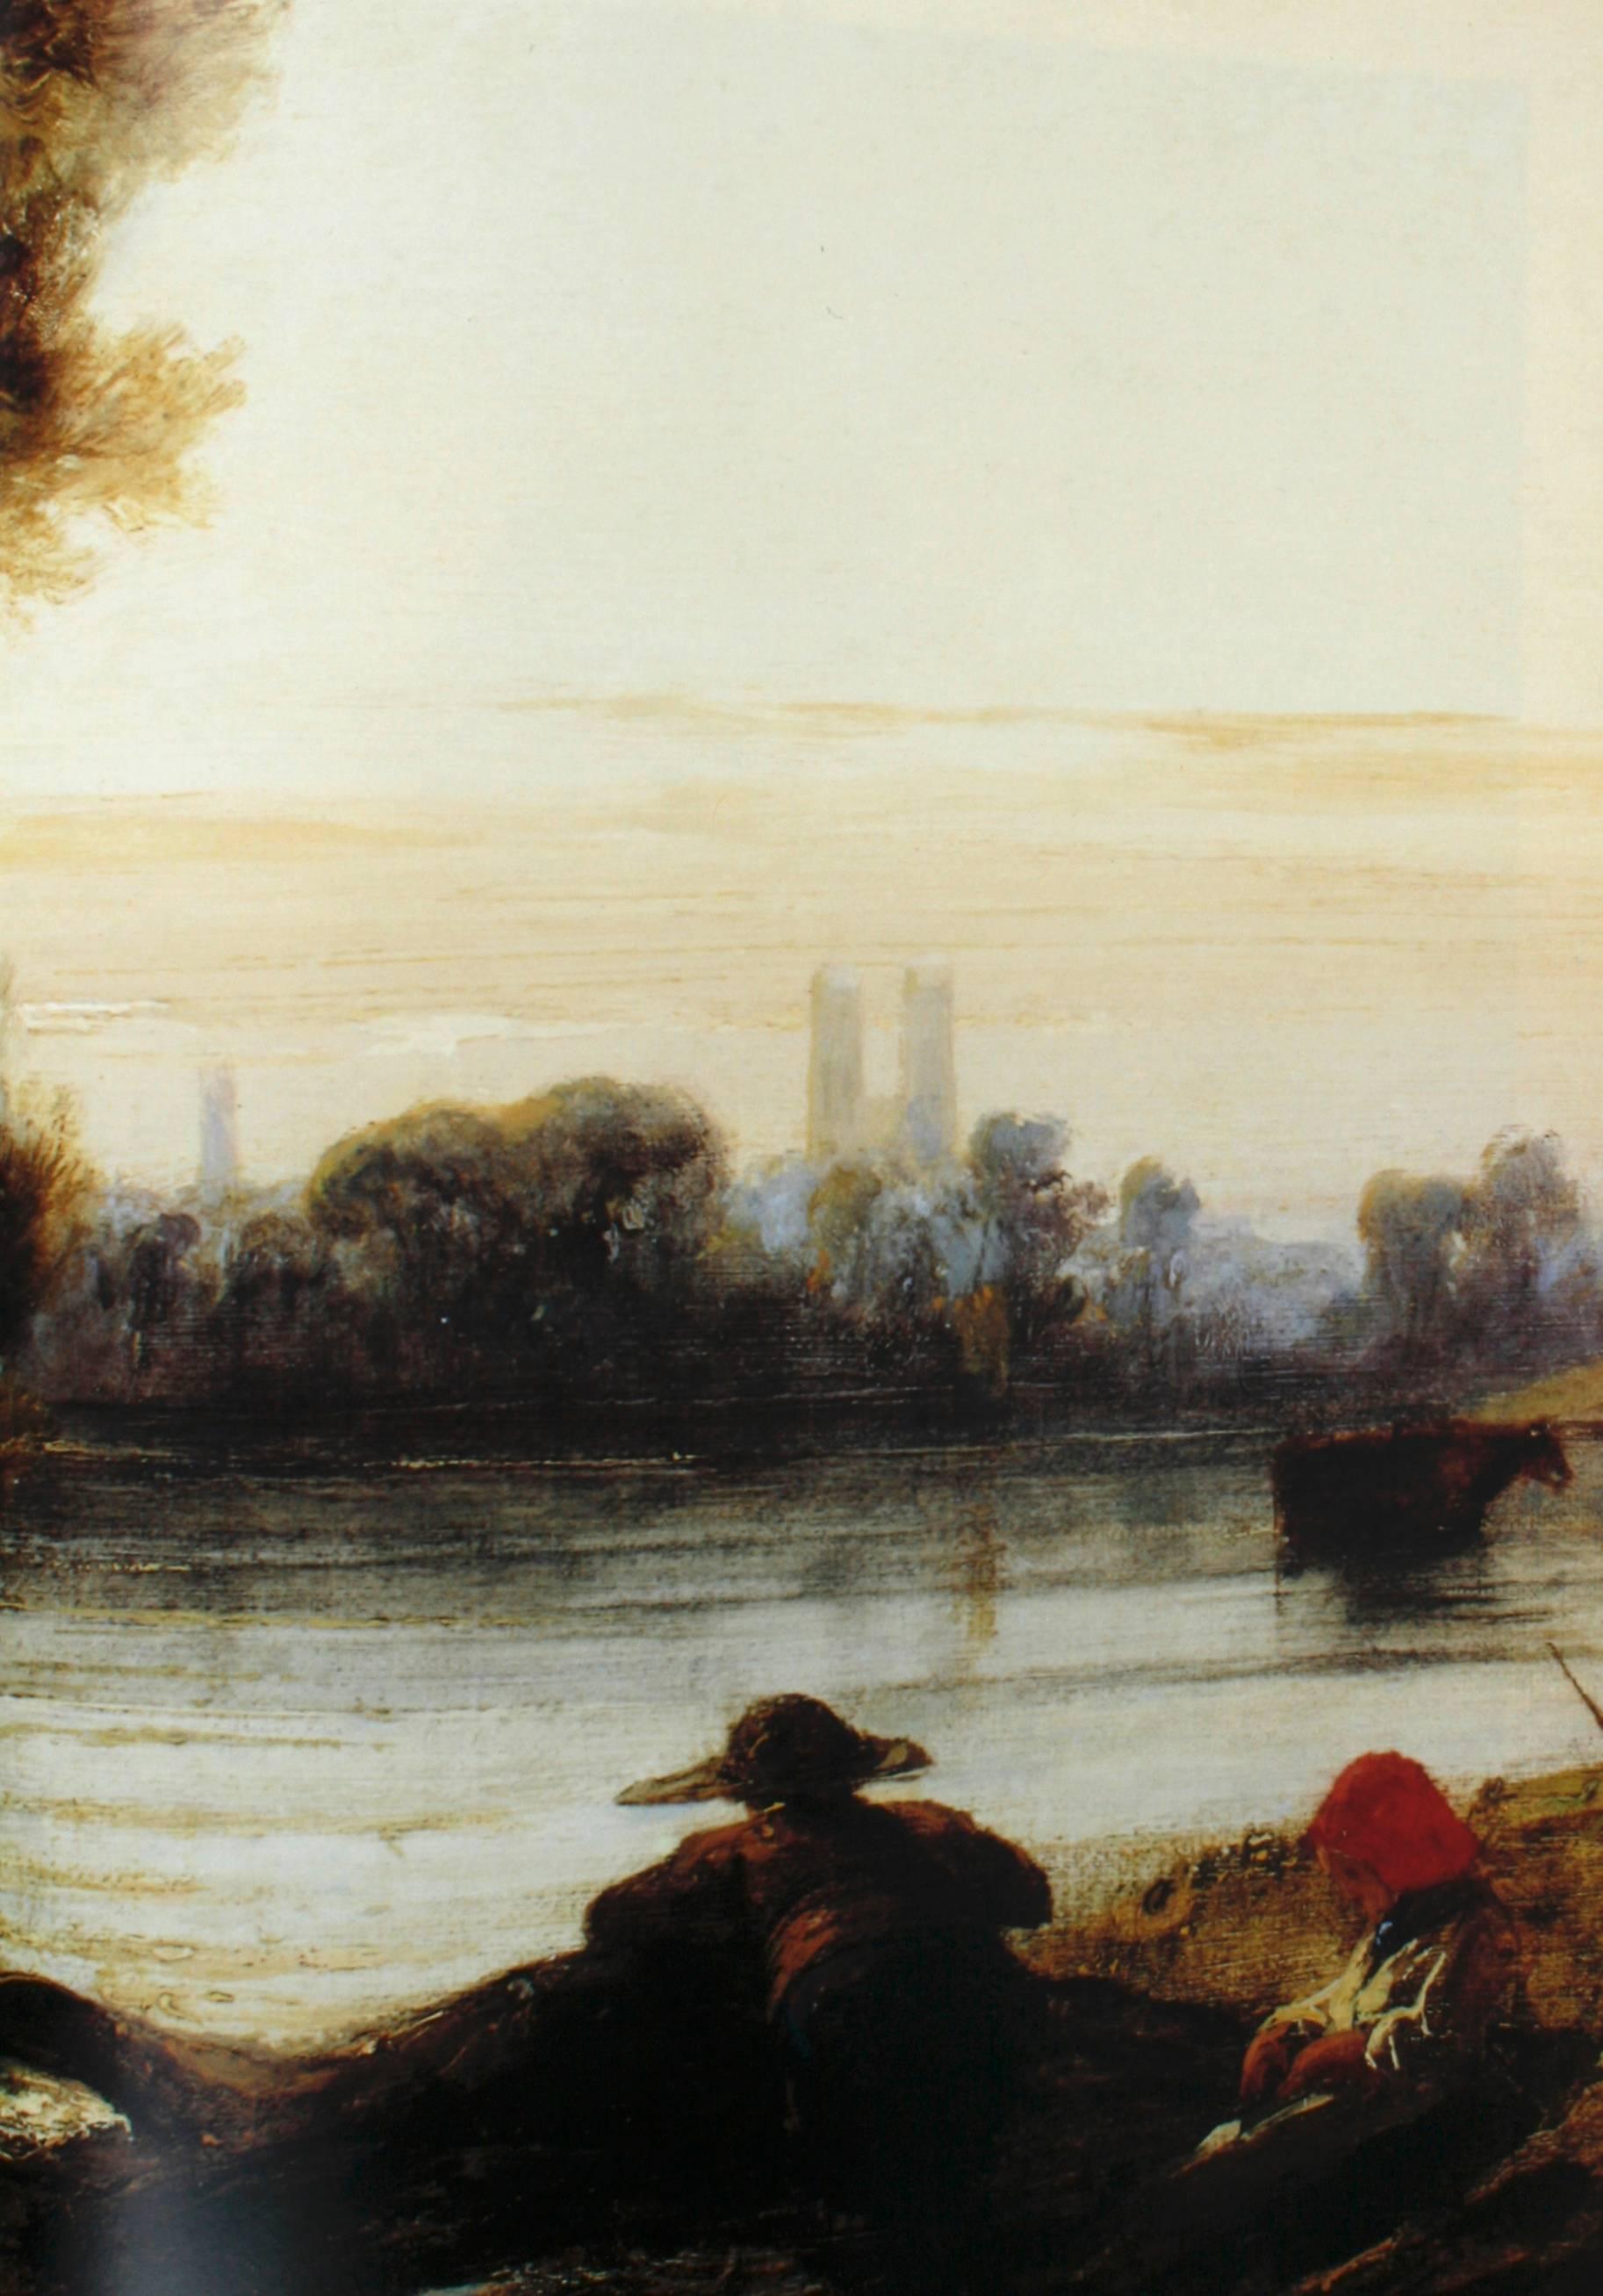 Américain Richard Parkes Bonington on the Pleasure of Painting - copie de l'évaluation pré-publiée de la peinture en vente